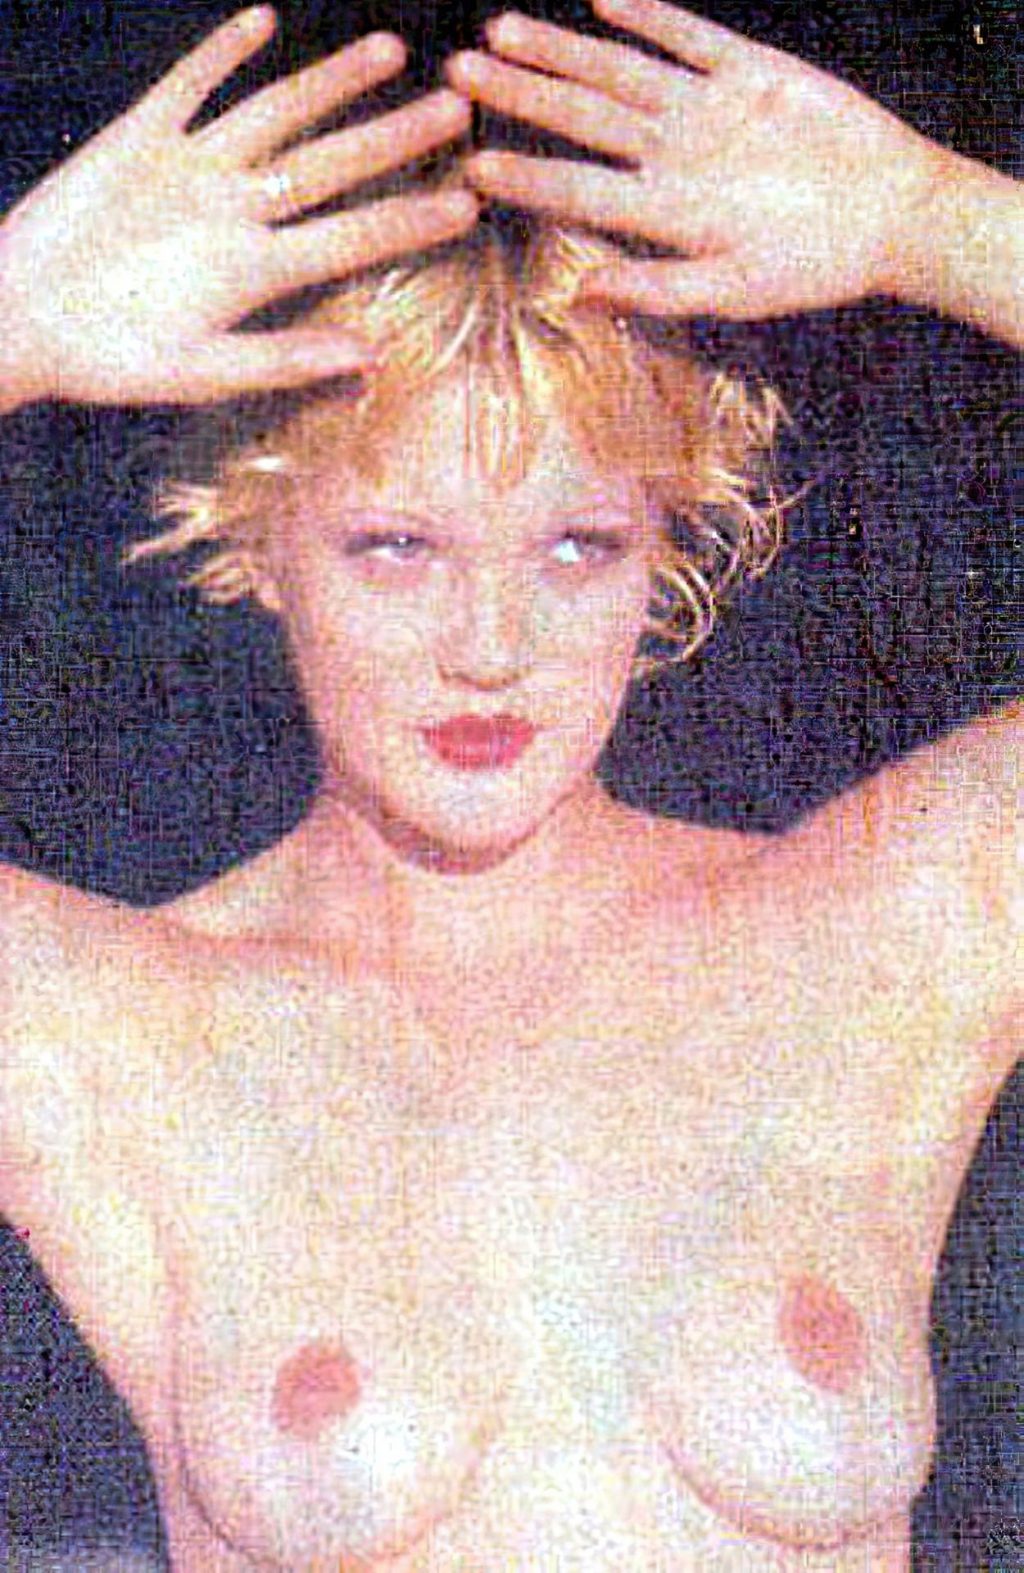 Barrymore photos drew nude 51 Nude